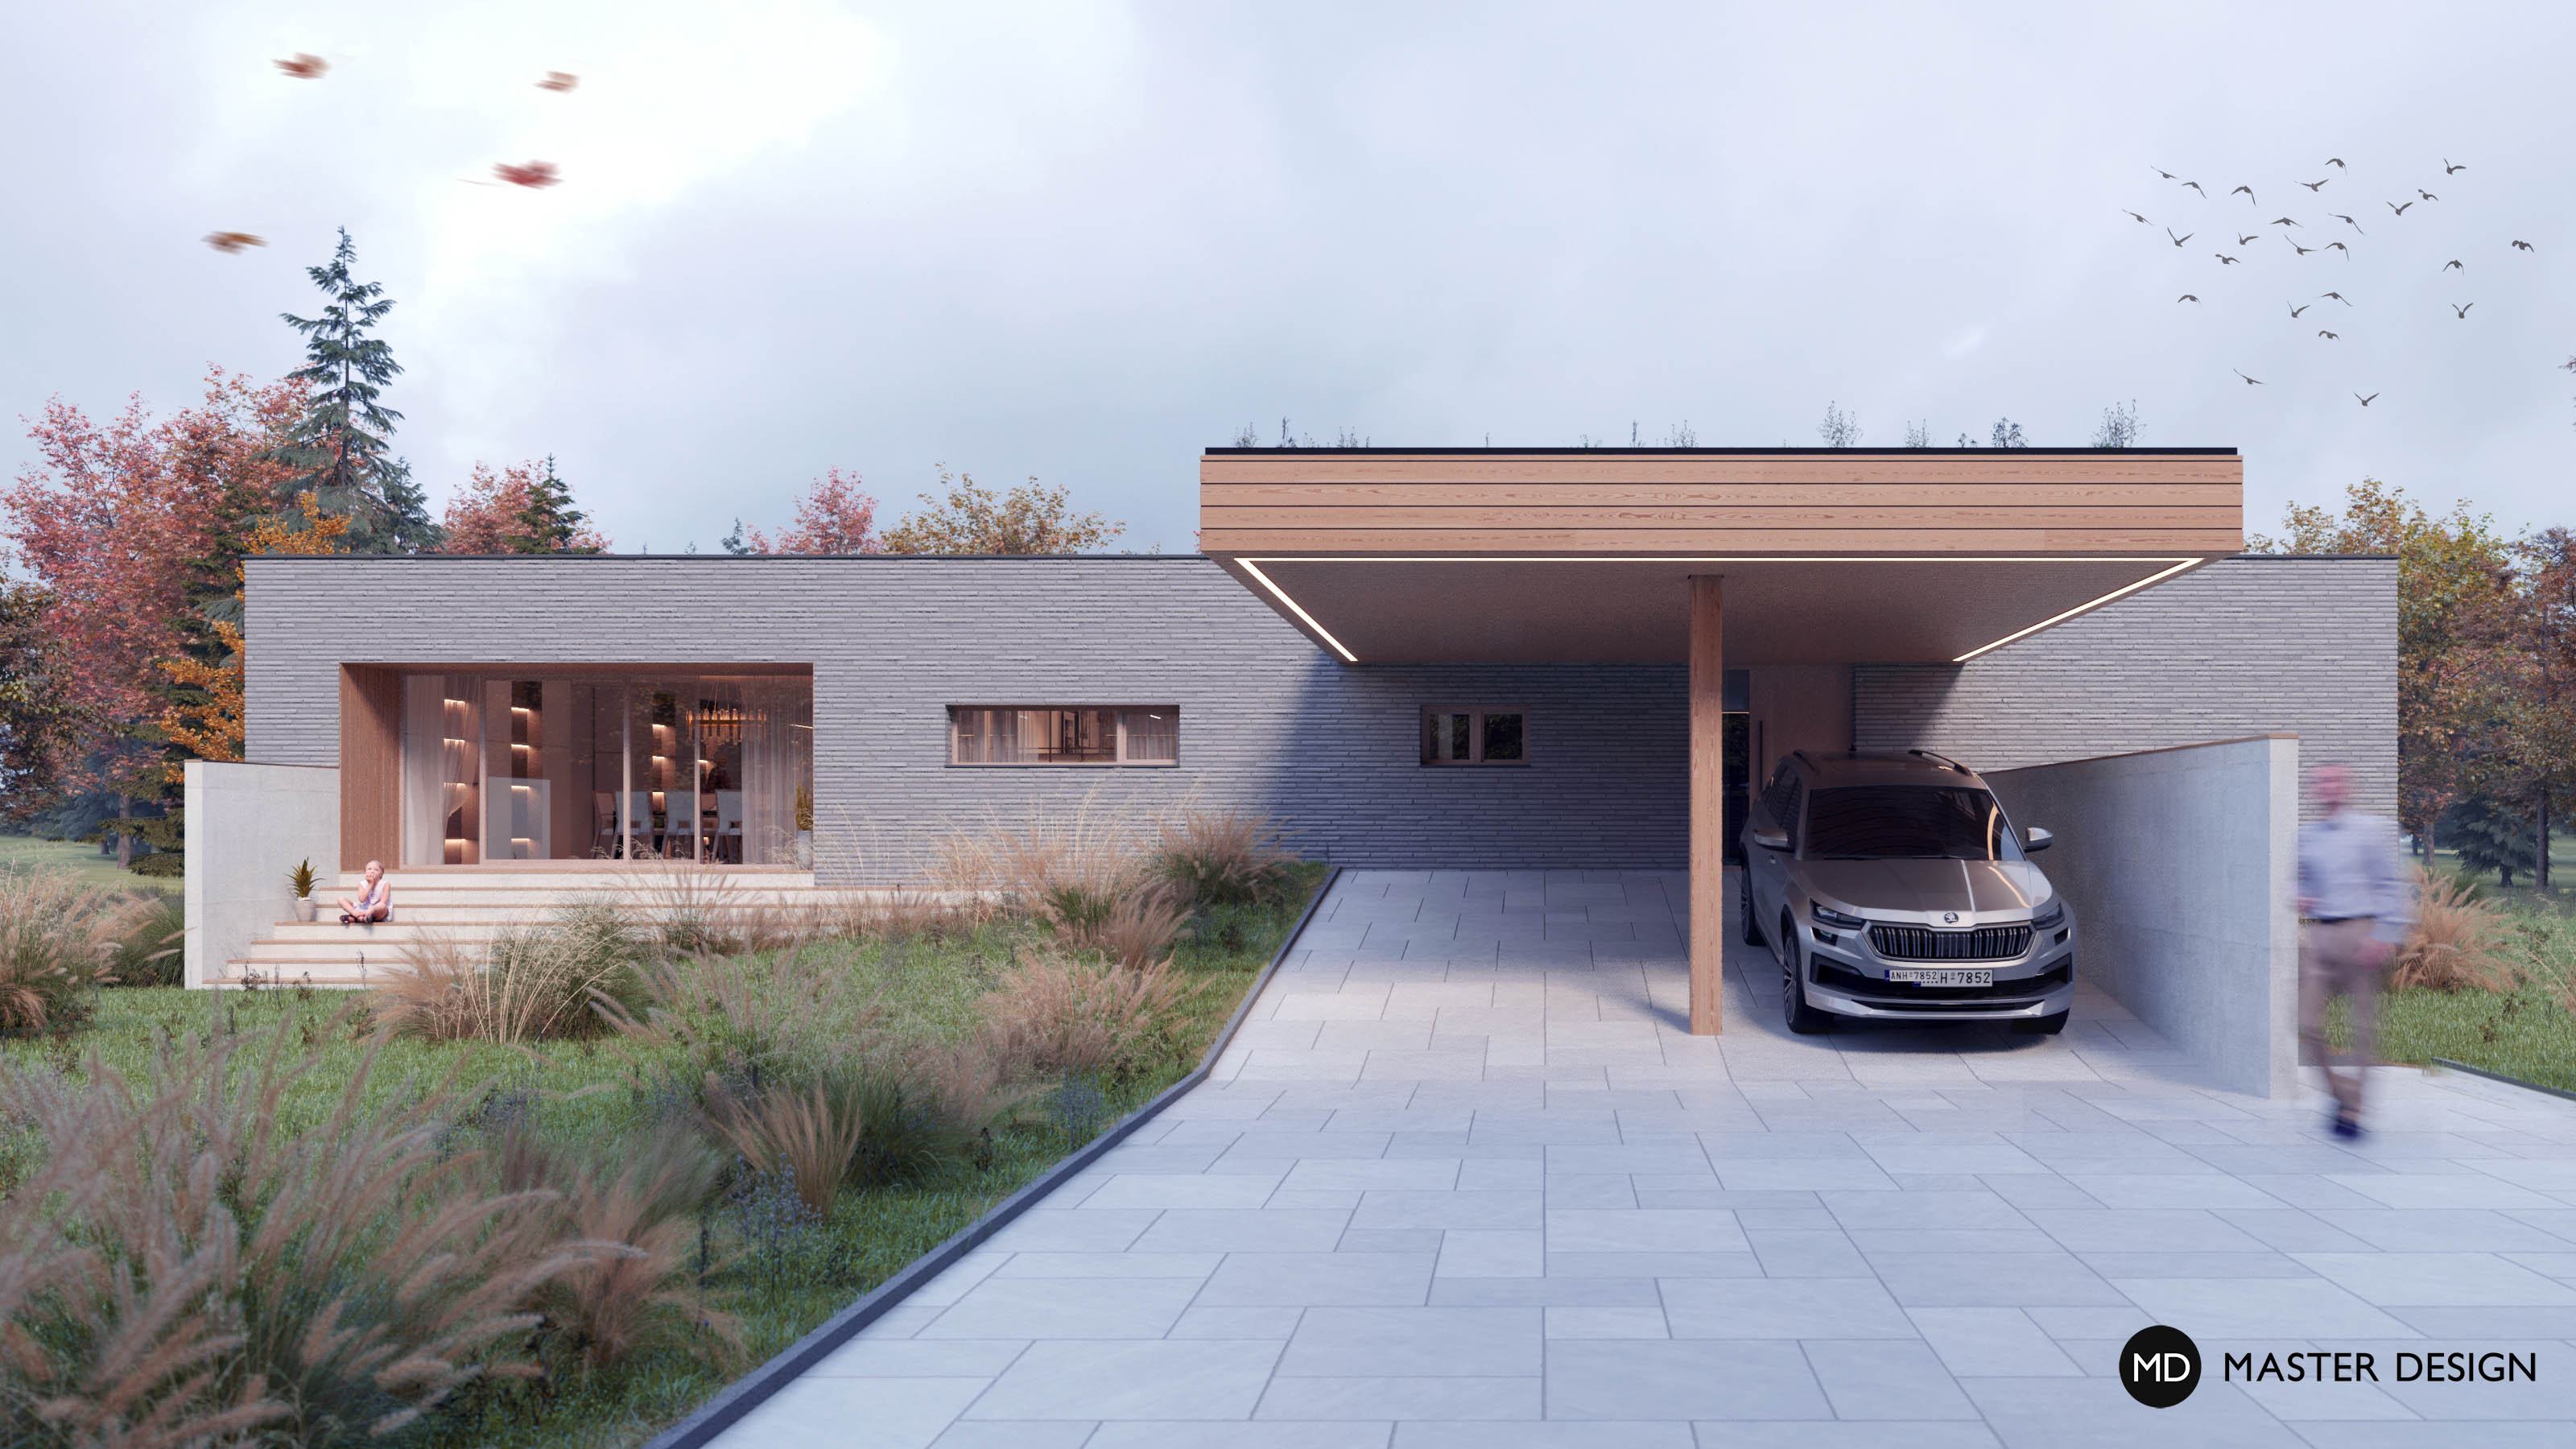 Rekonstrukce bungalovu na moderní přízemní dům s vnitřním atriem - Bradlec - Vizualizace 2